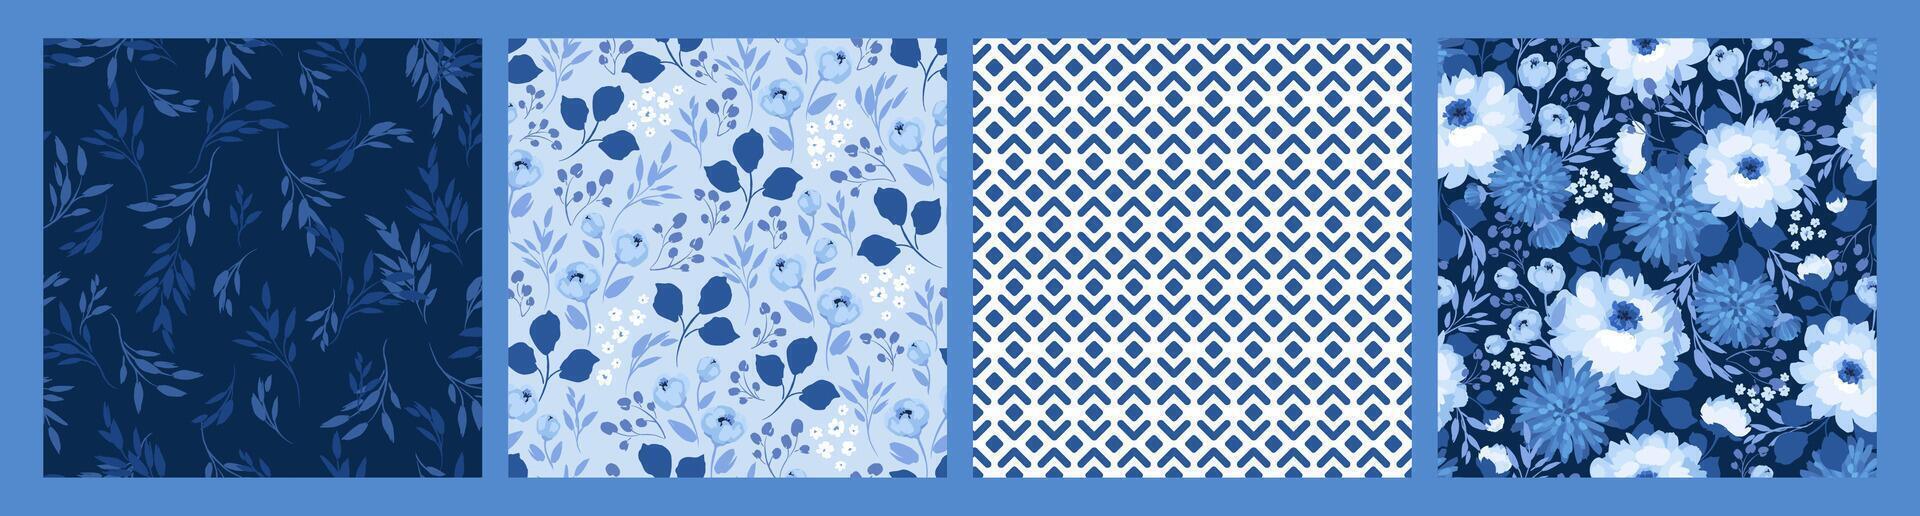 blauw bloemen naadloos patronen. ontwerp voor papier, omslag, kleding stof, interieur decor en andere toepassingen vector